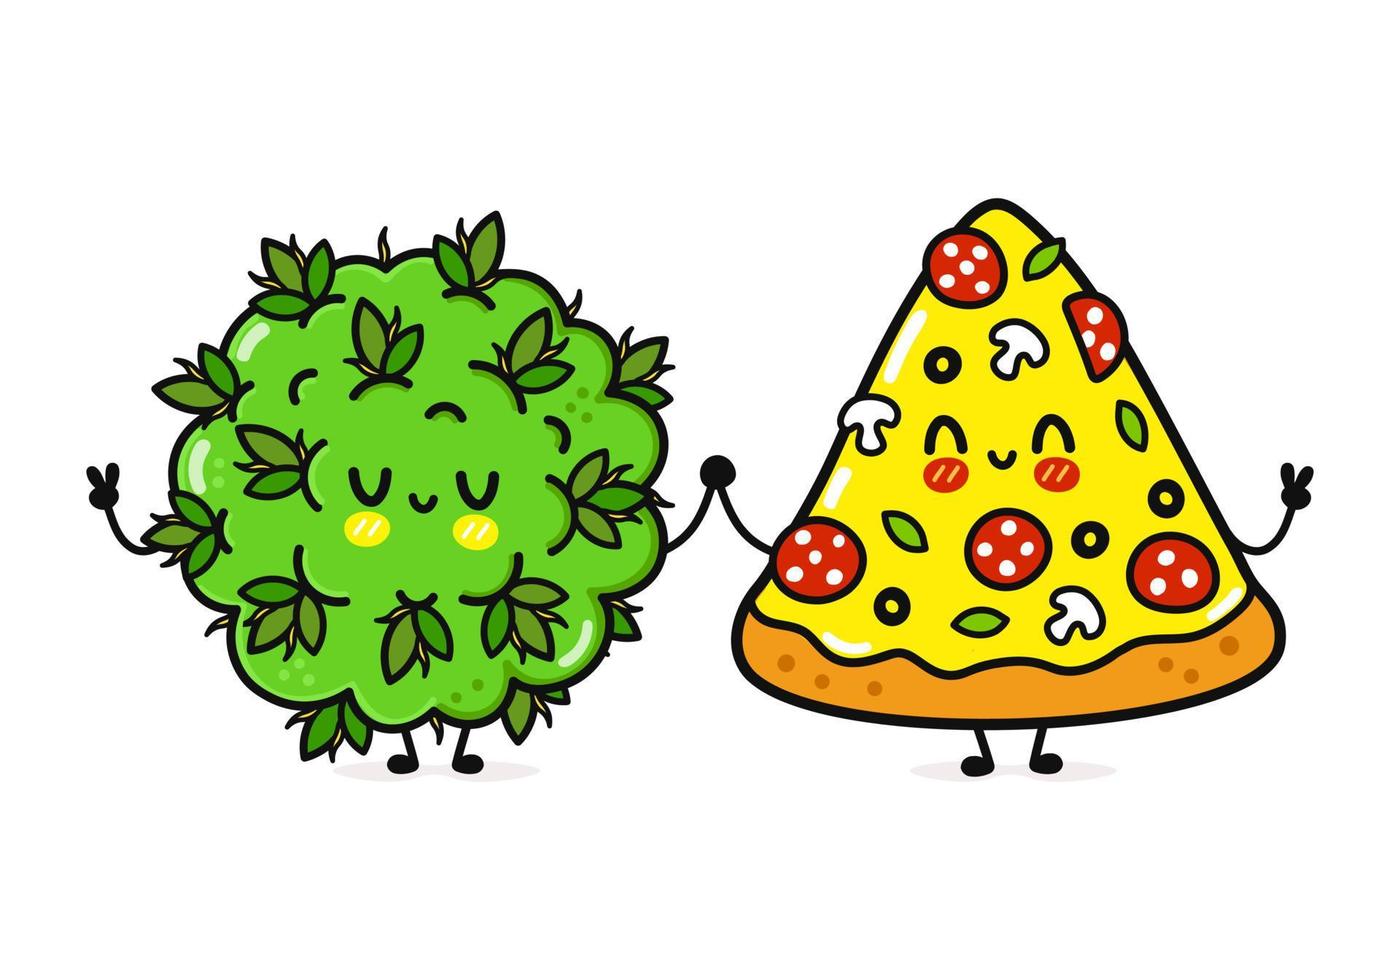 lindo, divertido personaje feliz de pizza y hierba de marihuana. personajes kawaii de dibujos animados dibujados a mano vectorial, icono de ilustración. divertidos dibujos animados pizza feliz y amigos de brotes de hierba de marihuana vector